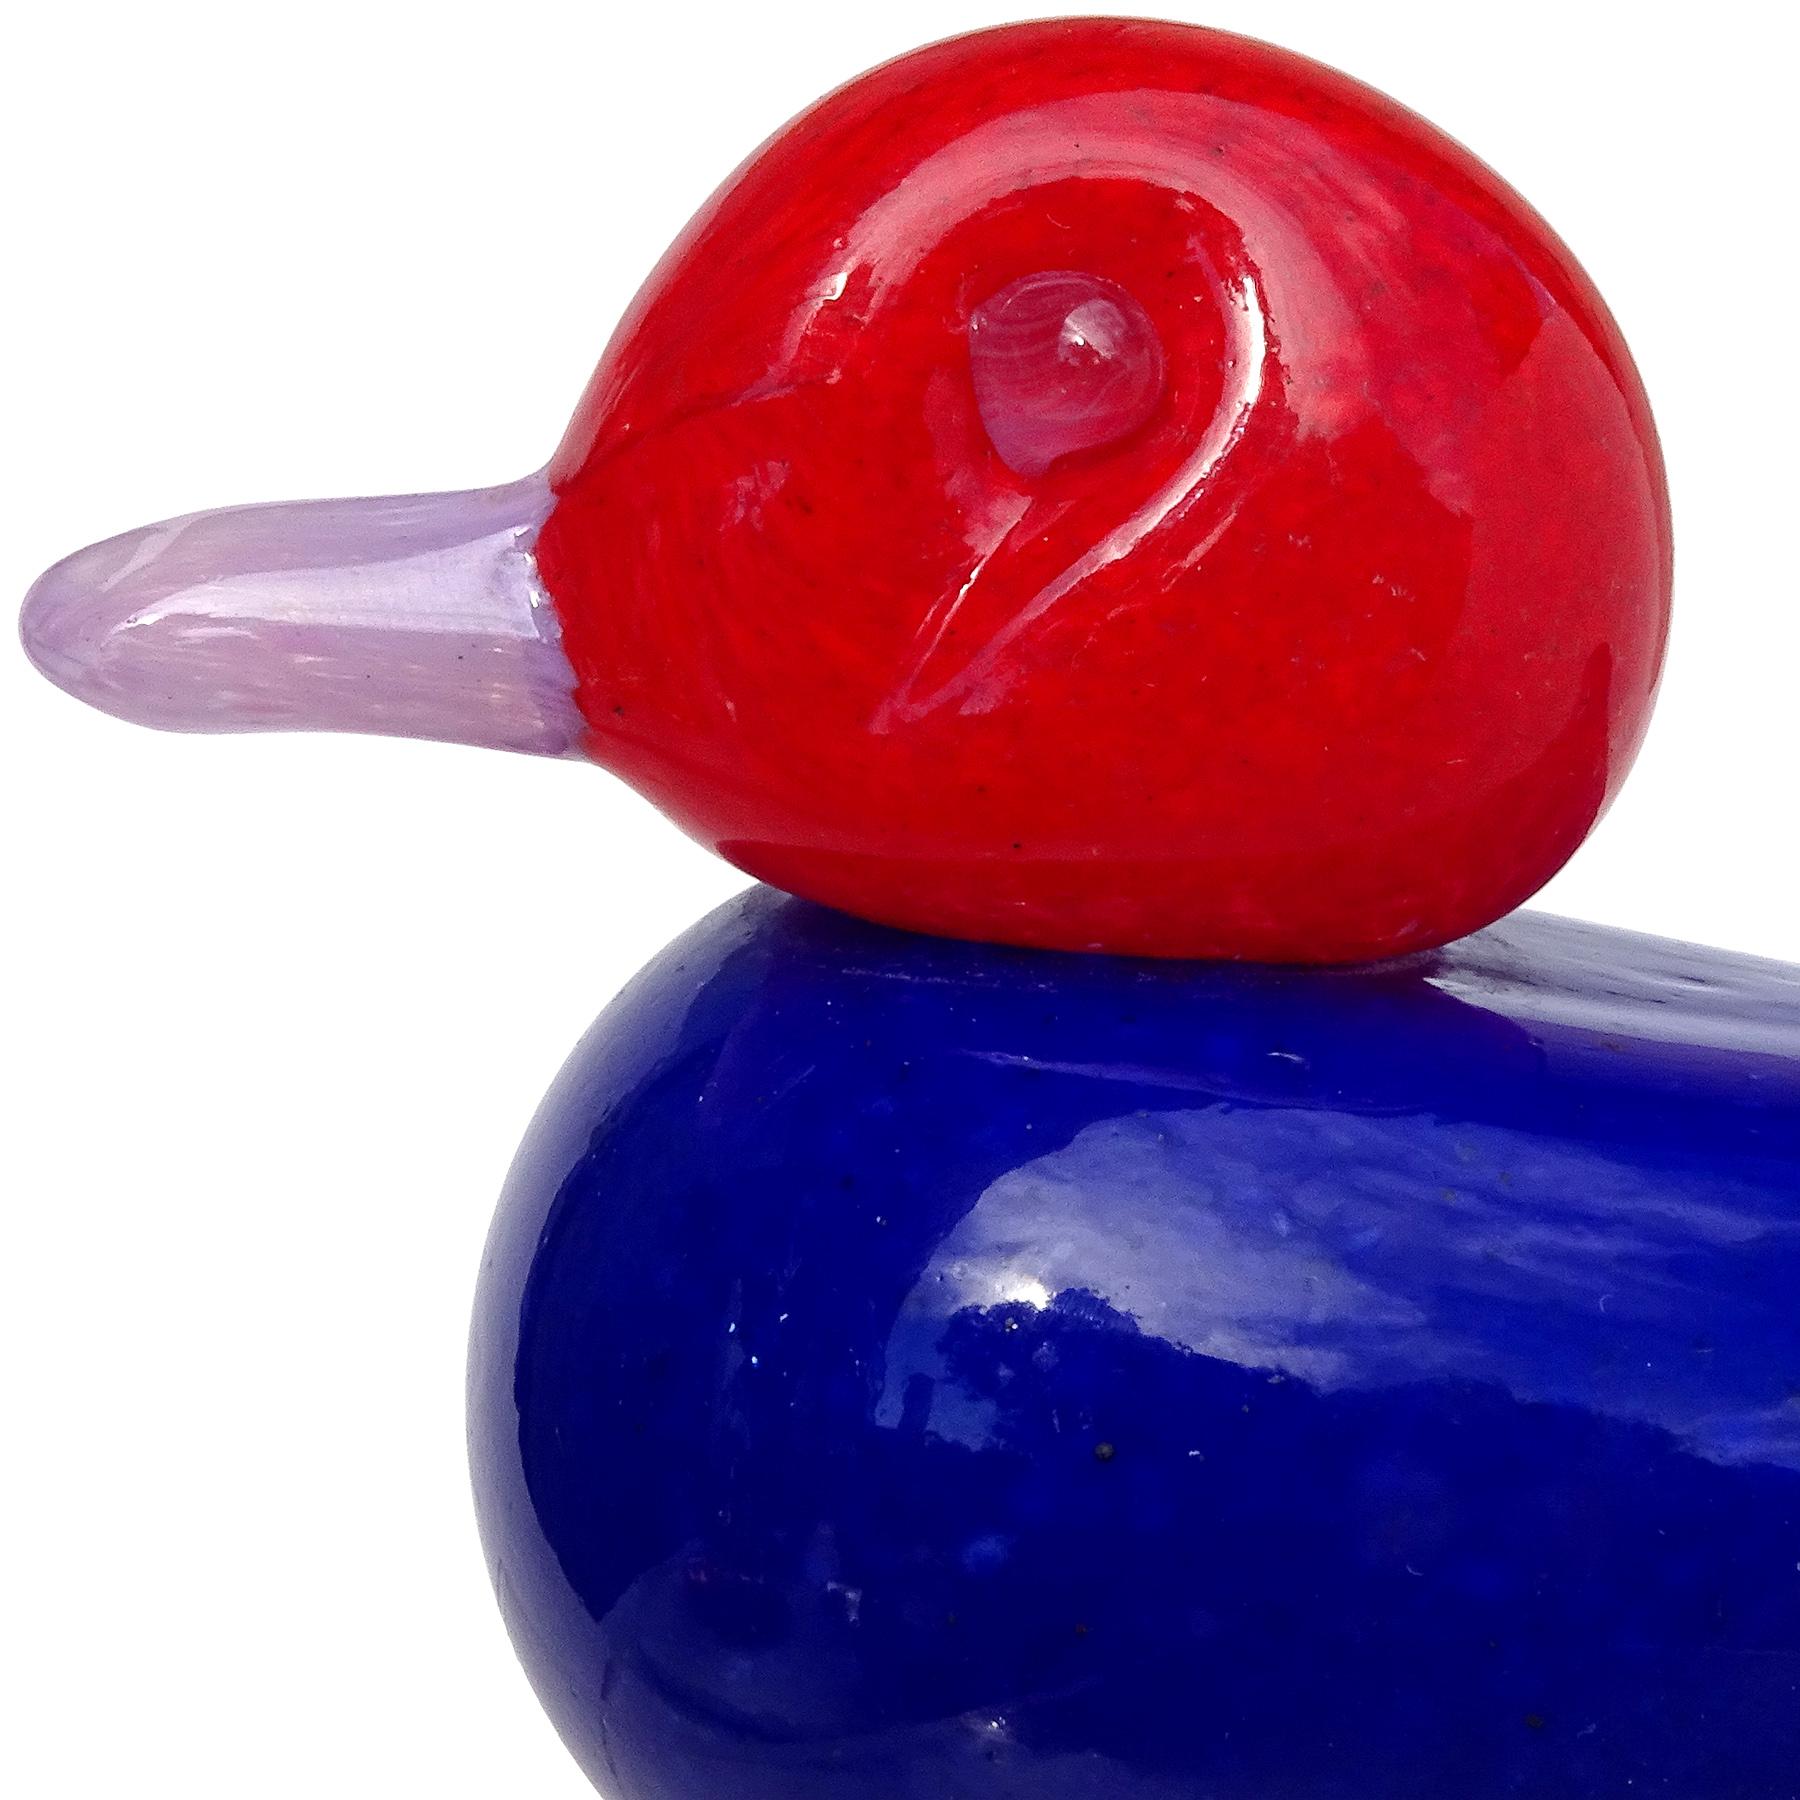 Magnifique presse-papier / figurine d'oiseau en verre d'art italien de Murano soufflé à la main en rouge vif, bleu cobalt foncé et lavande. La pièce est documentée comme provenant de la société Gambaro & Poggi, avec un original 